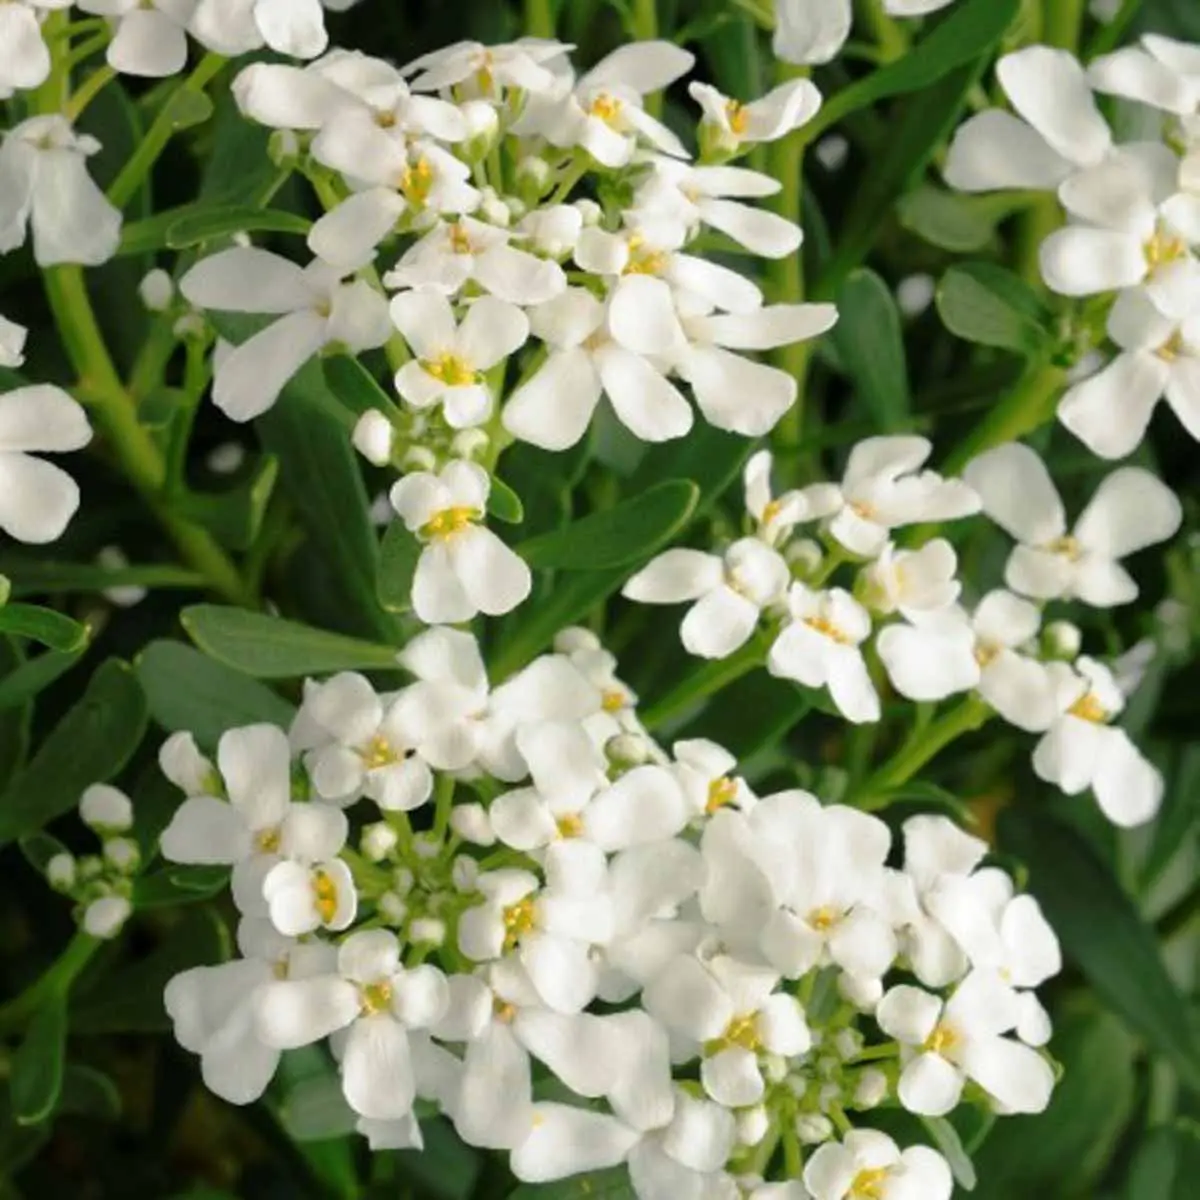 Iberis fiore: coltivazione e cura delle piante perenni sempreverdi (45 caratteri)